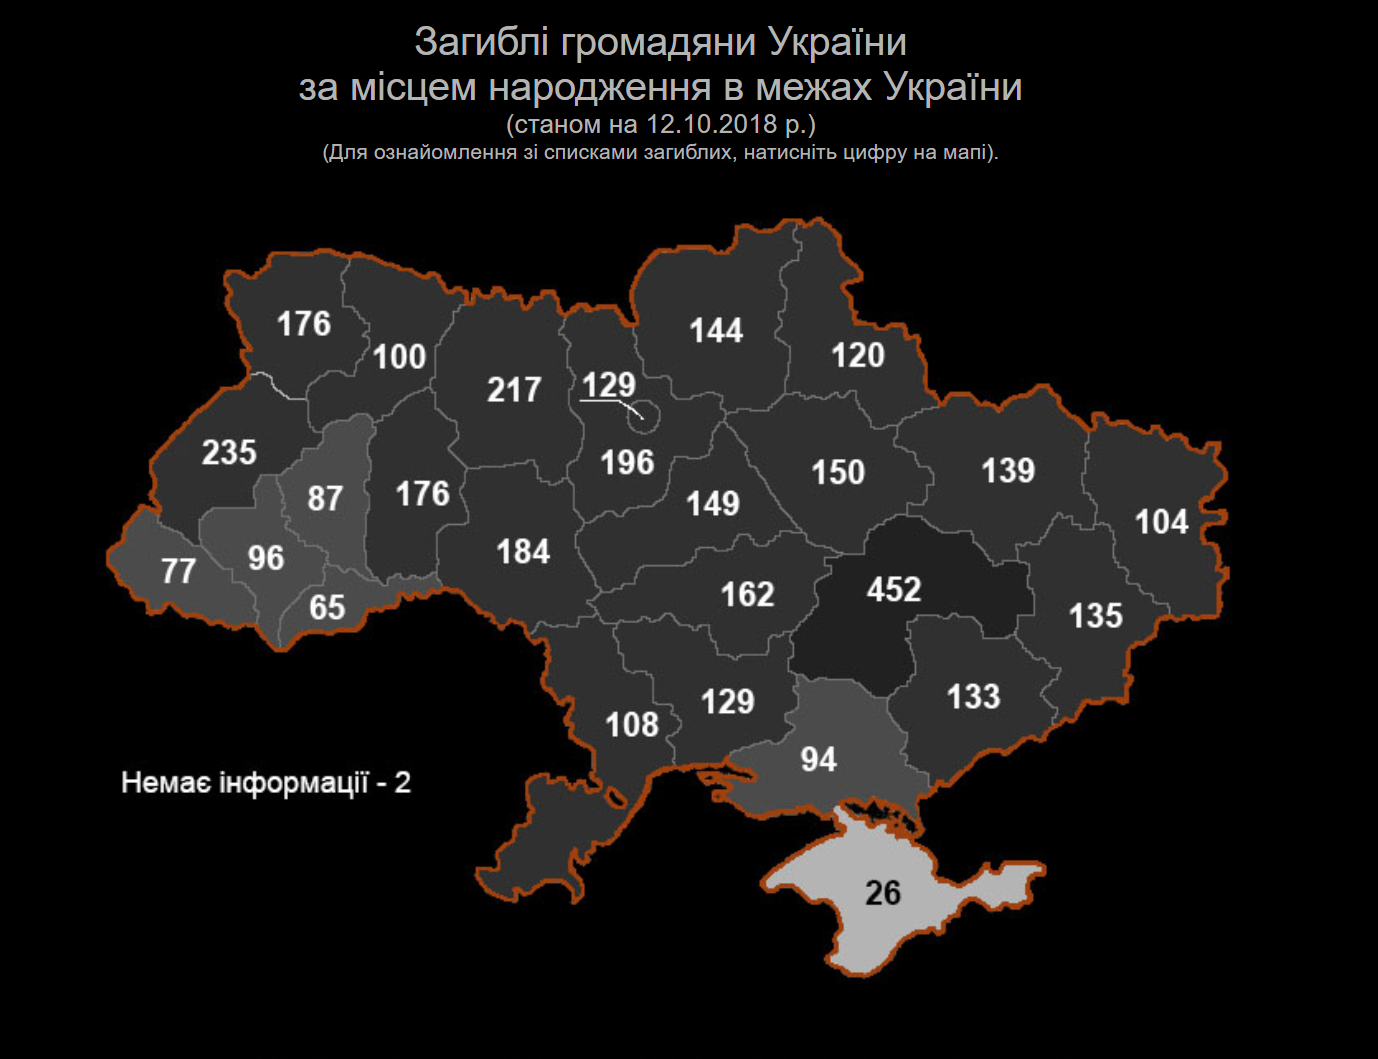 Количество погибших на украине данные украины. Потери Украины по областям. Карта Украины. Потери в АТО по областям. Число погибших в АТО по областям Украины.